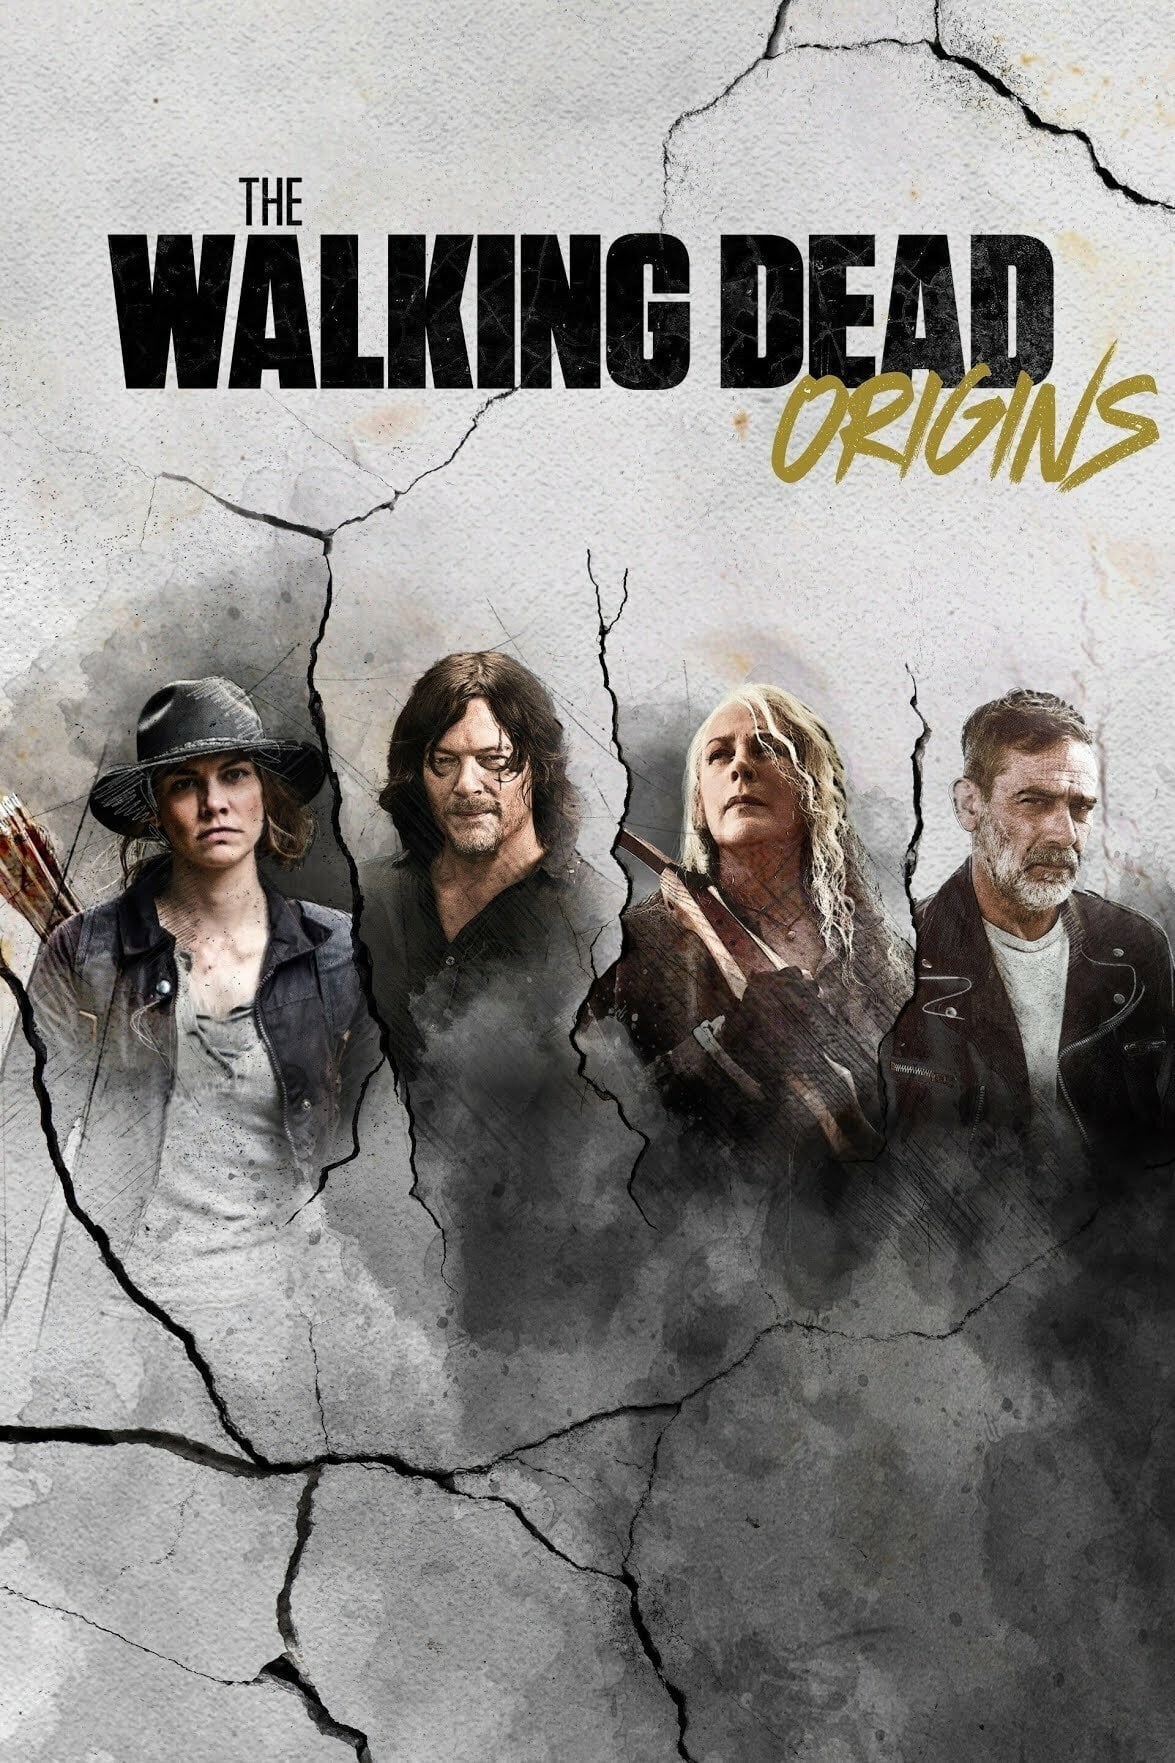 The Walking Dead: Origins - Season 1 (2021)